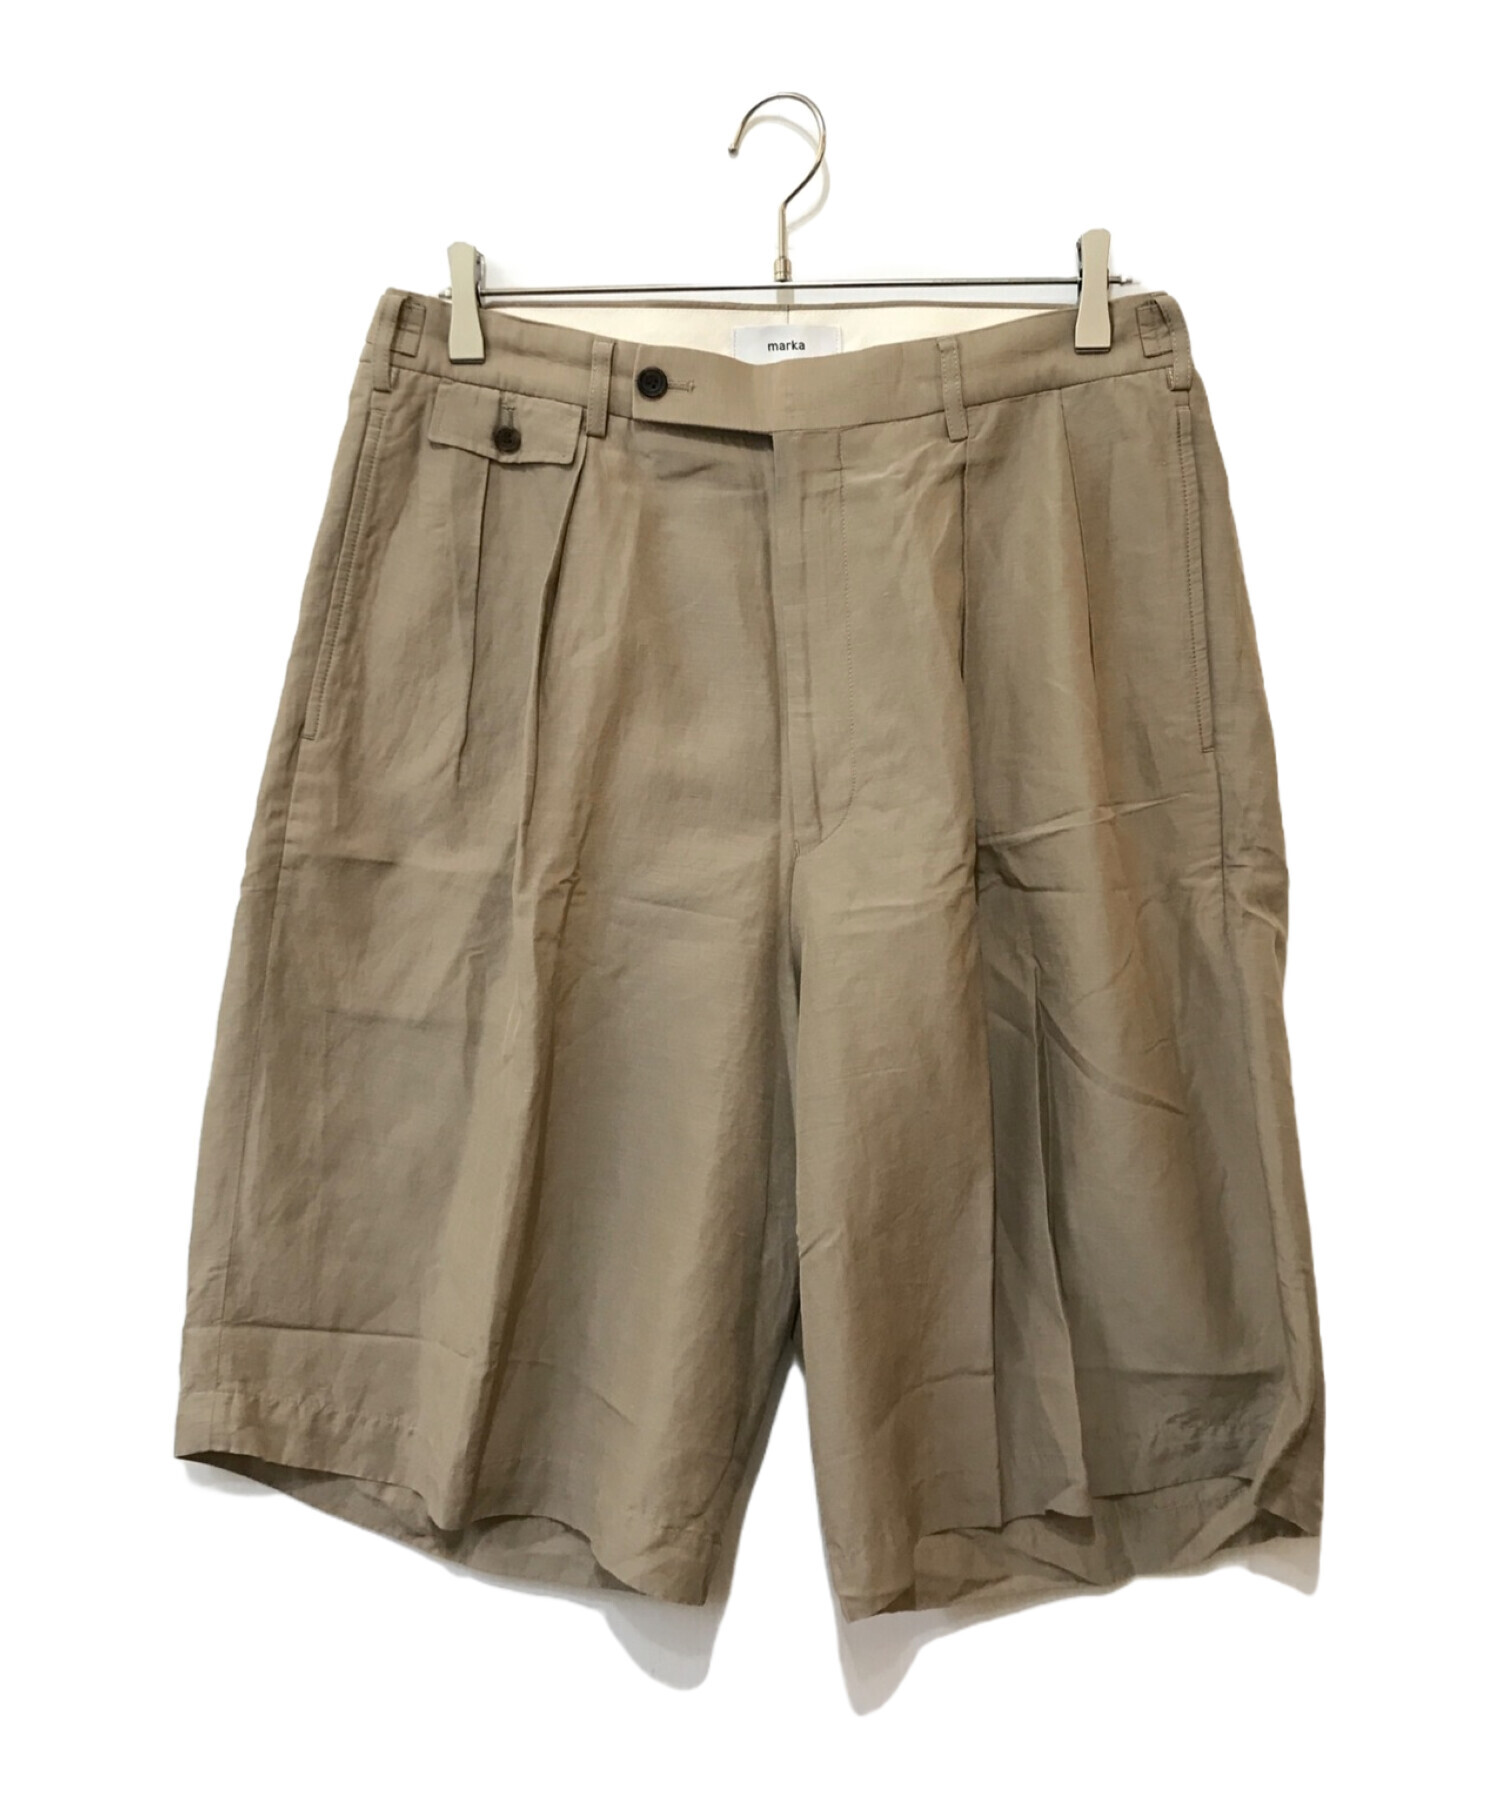 中古・古着通販】MARKA (マーカ) cu/li/co cloth 2tuck shorts 